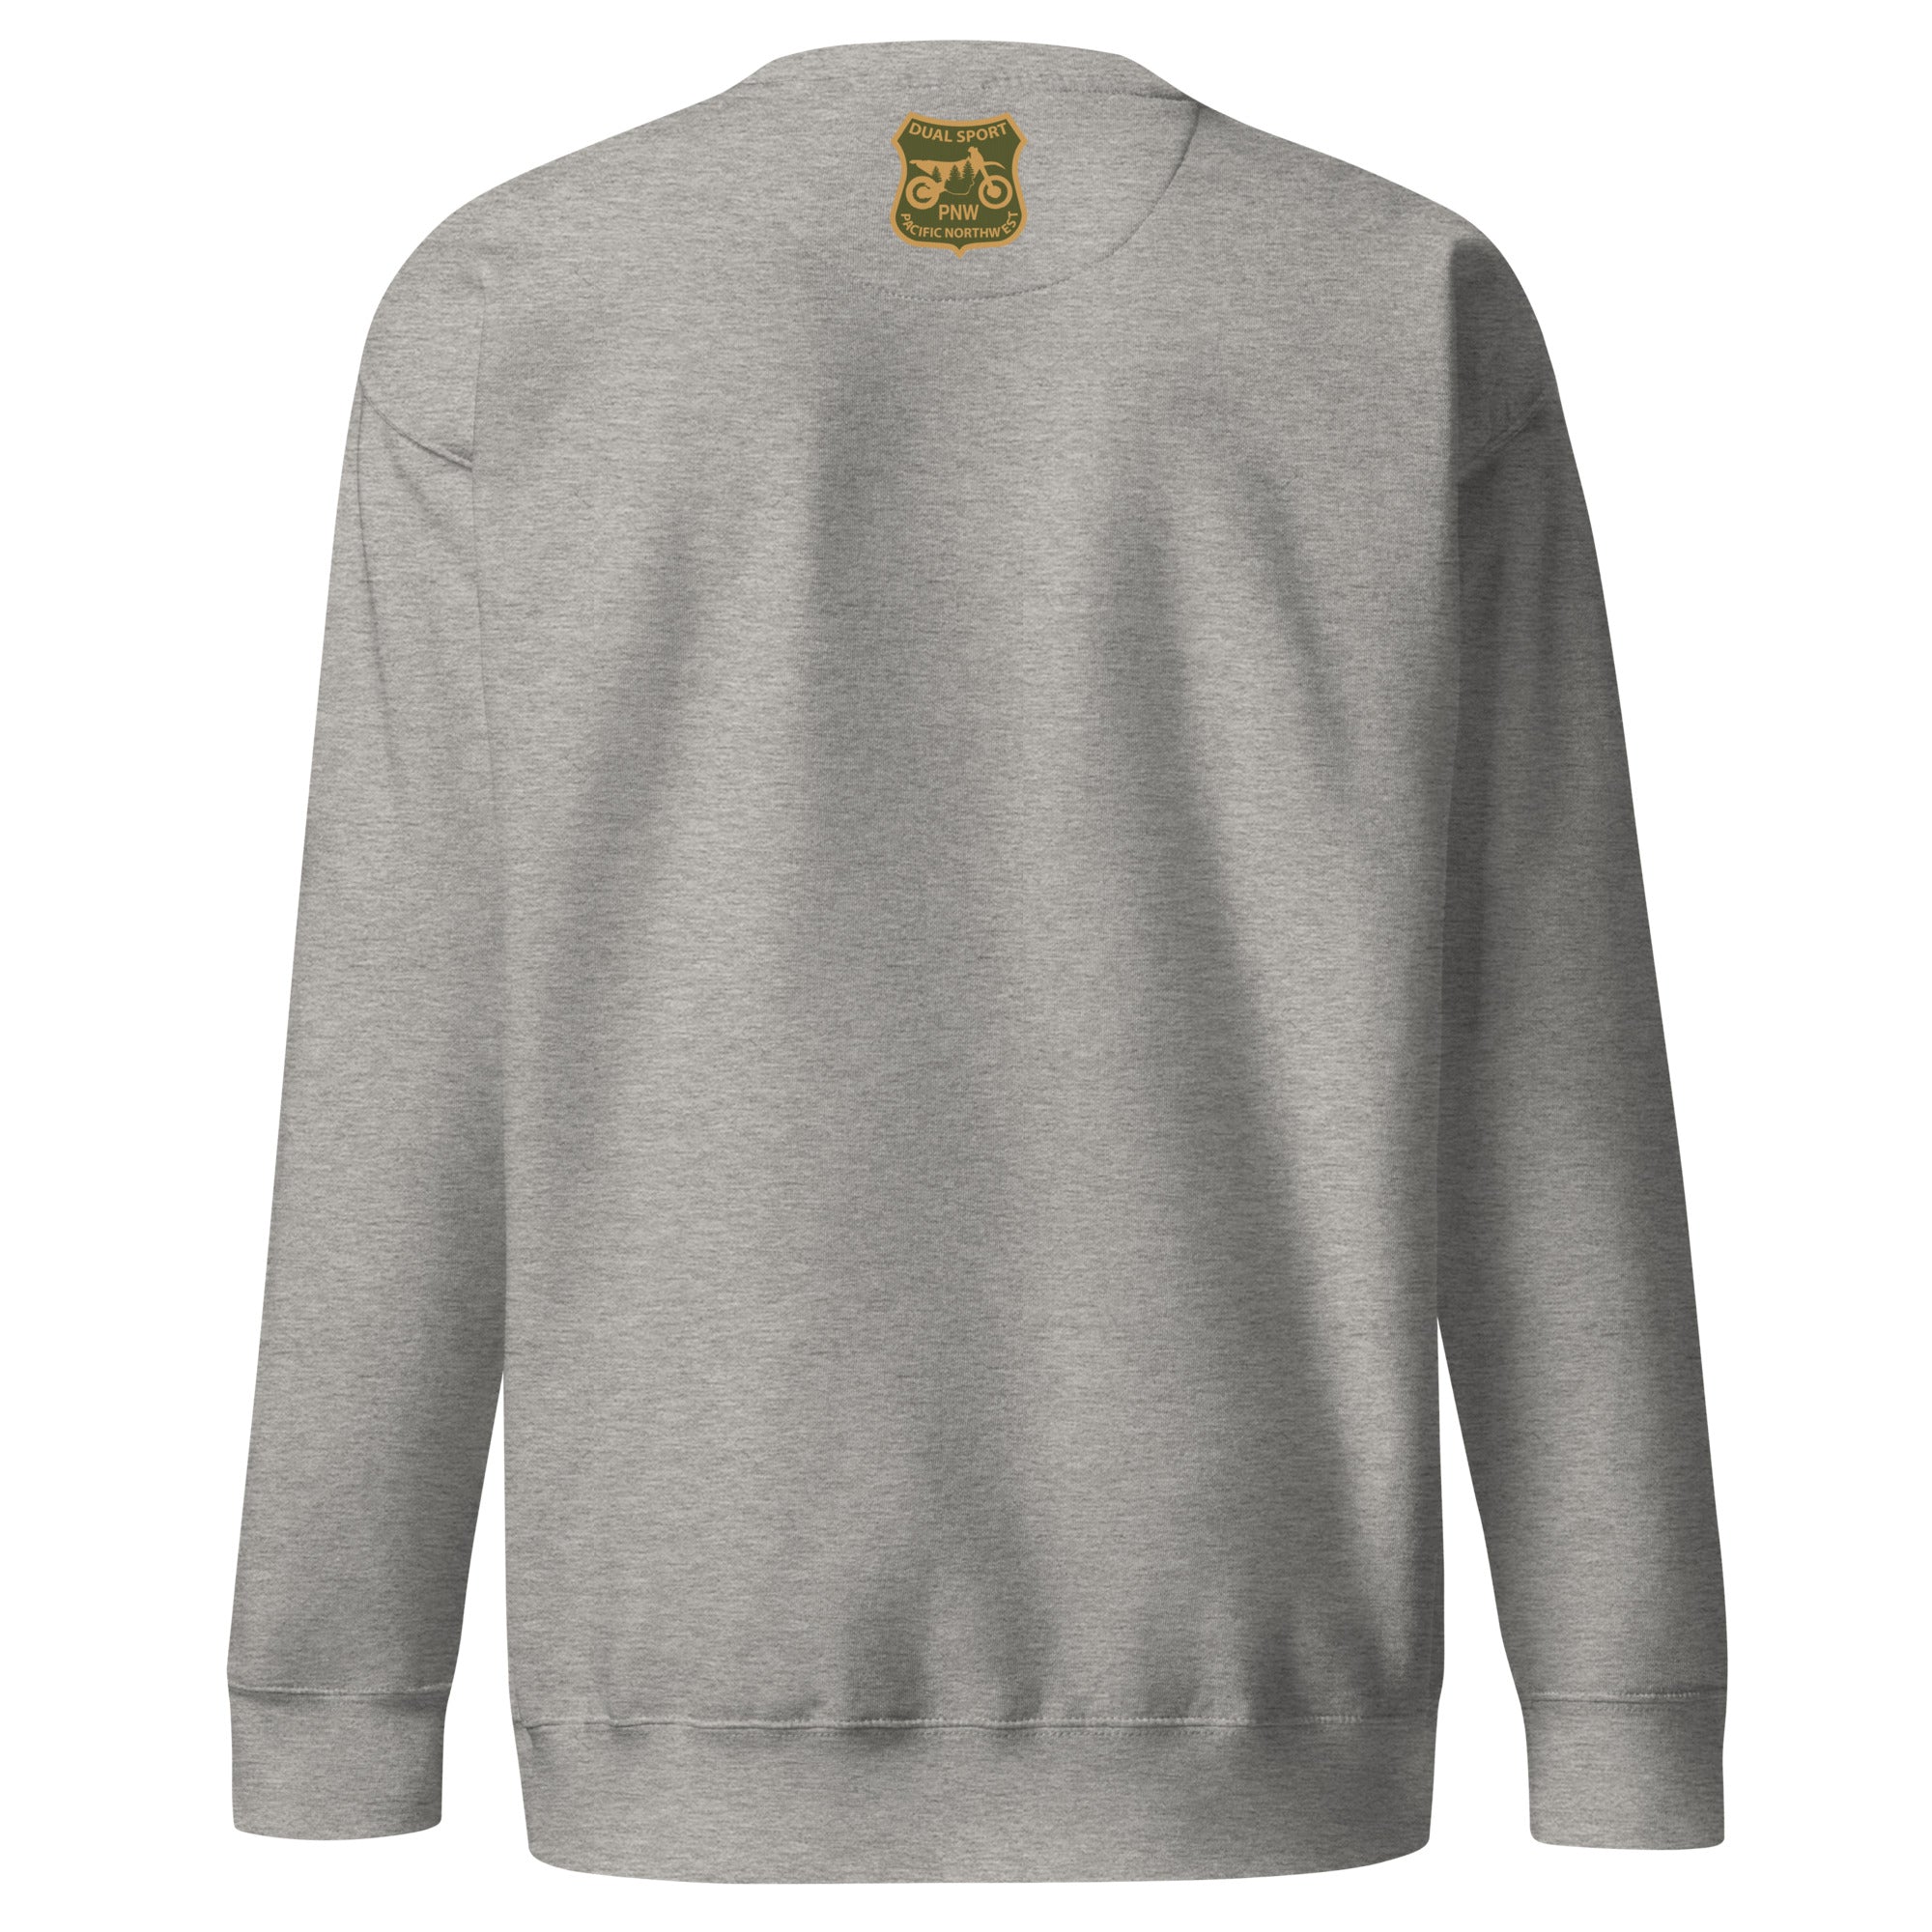 TreeBike Sweater, Premium, White